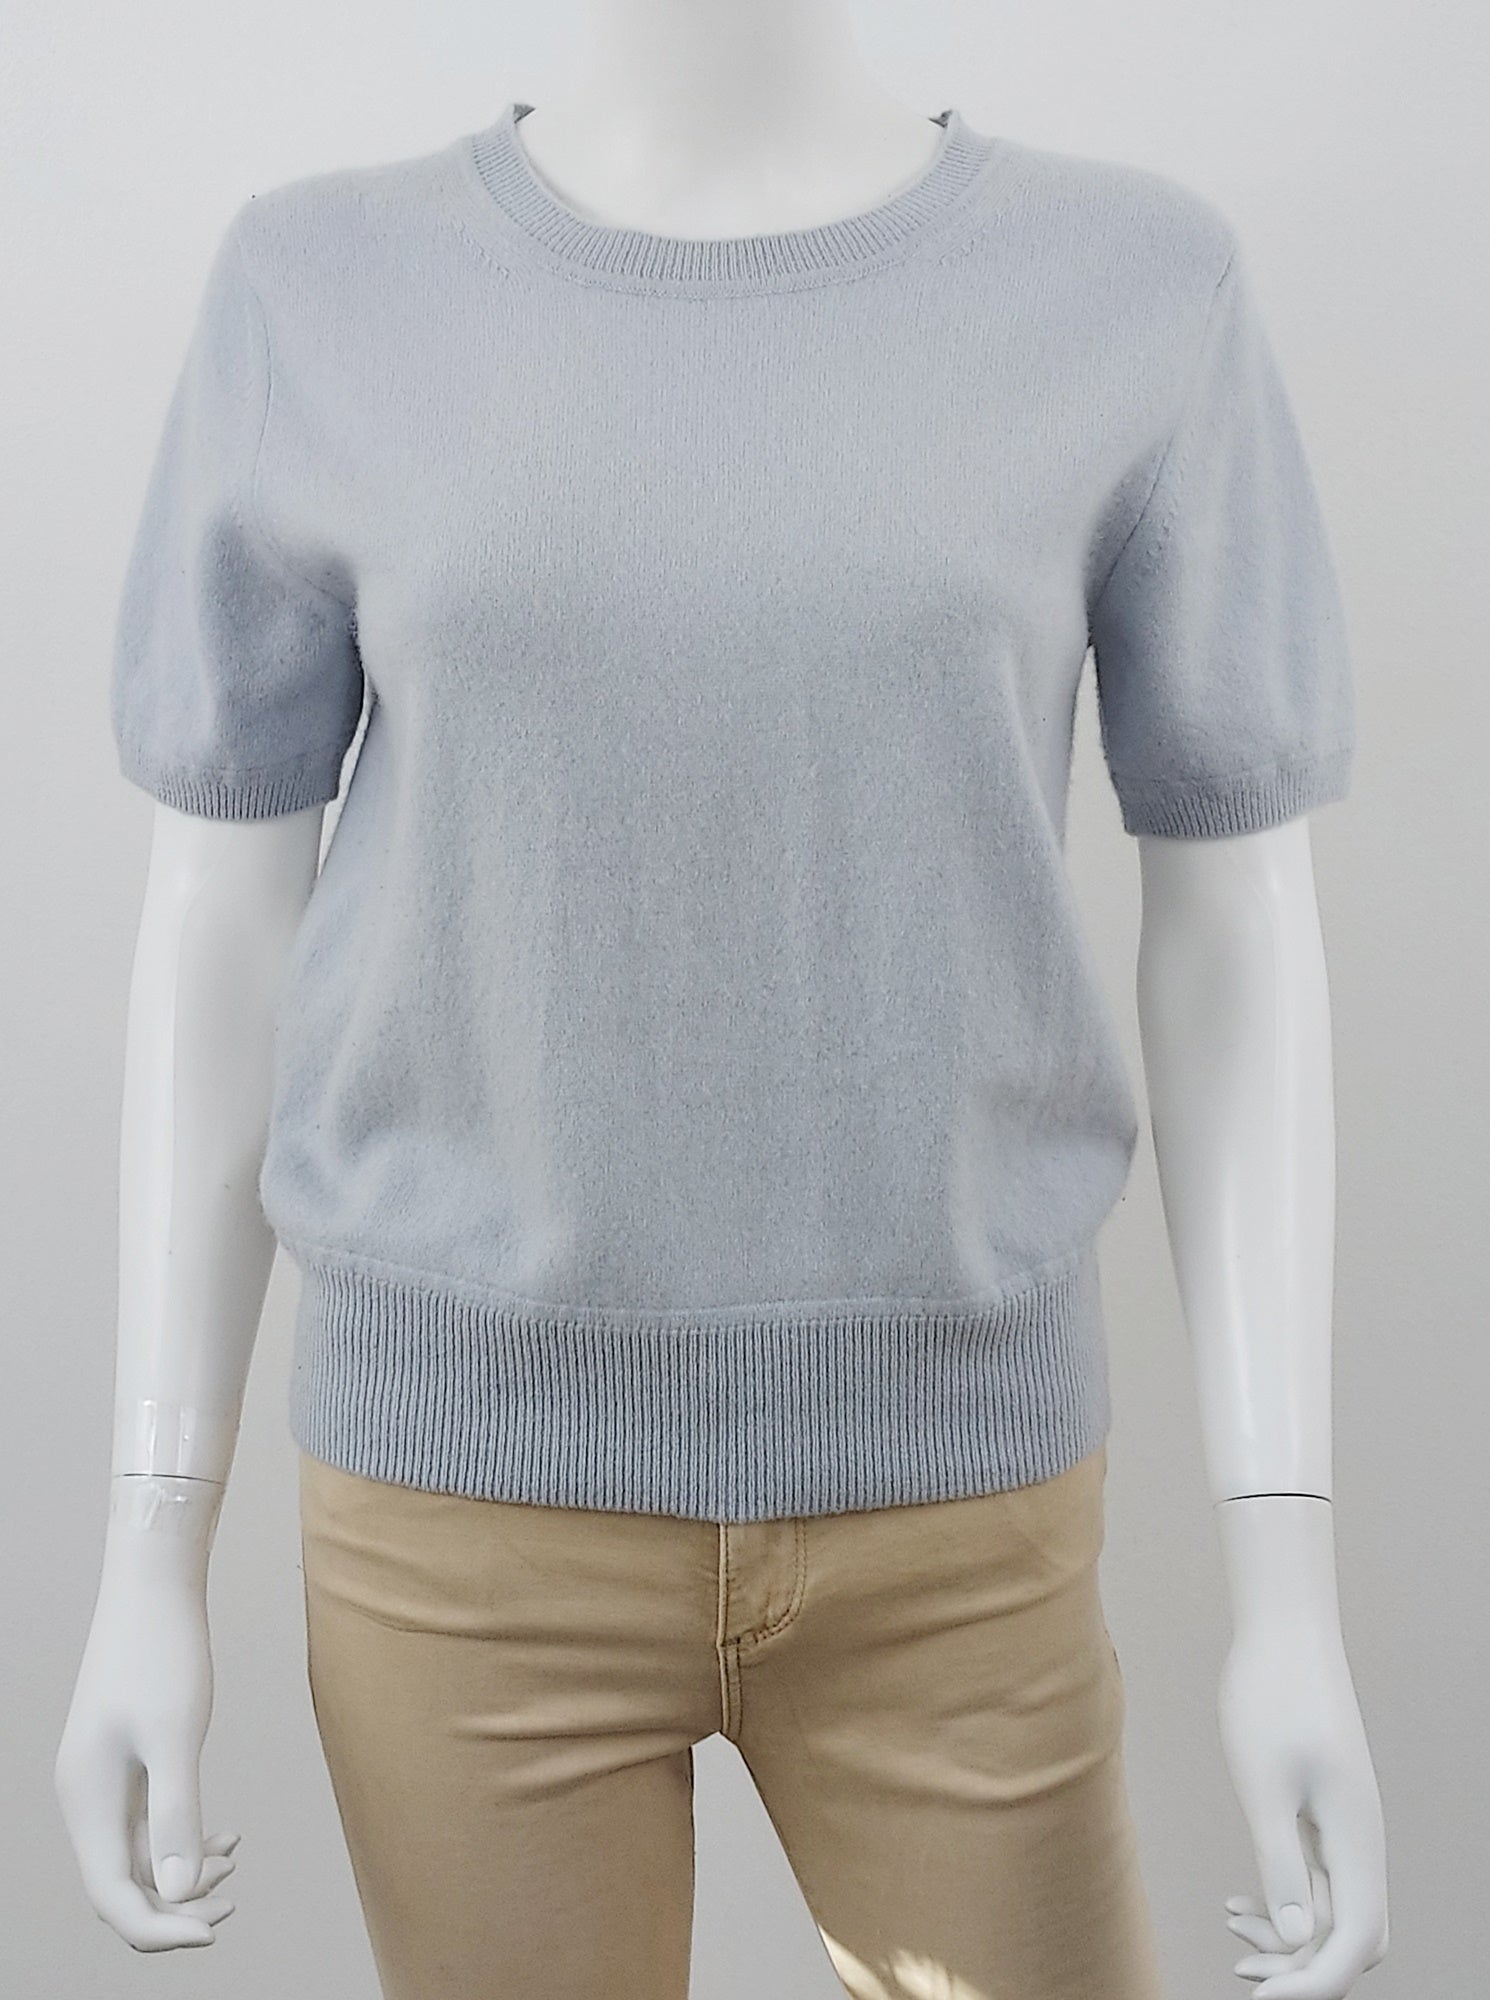 Short Sleeve Cashmere Sweater Size Medium